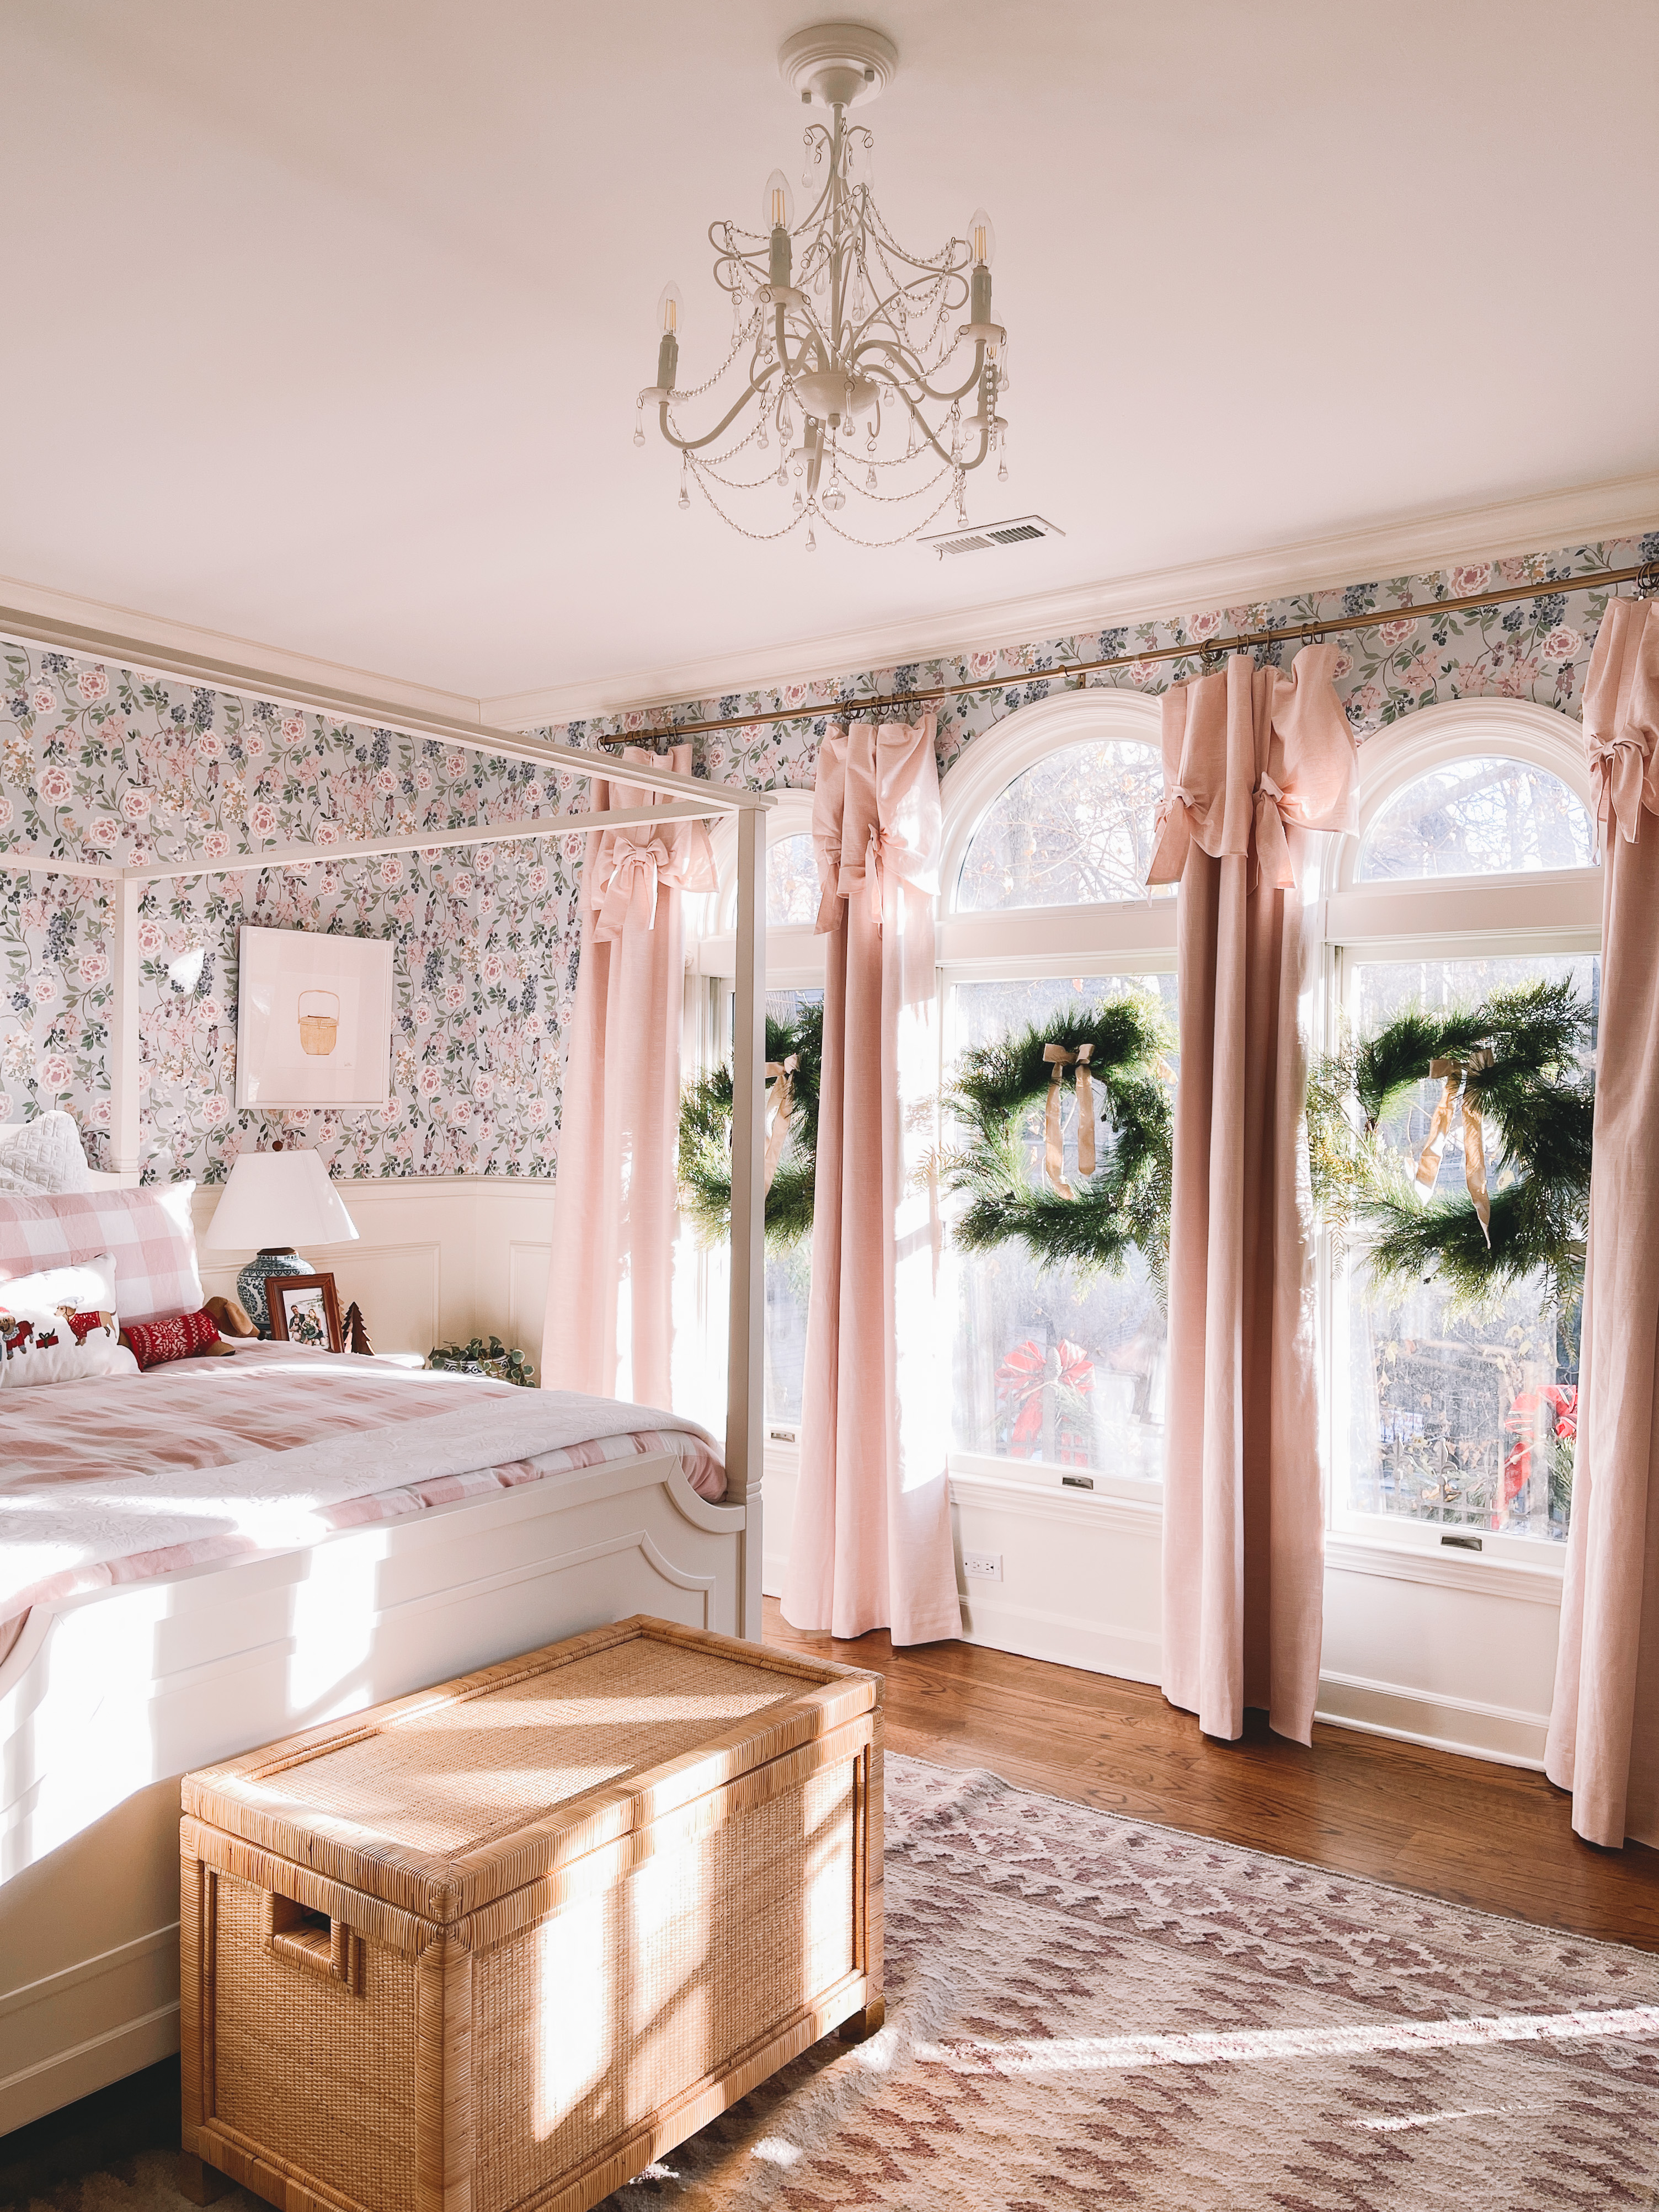 Holiday Decor: Emma's Room